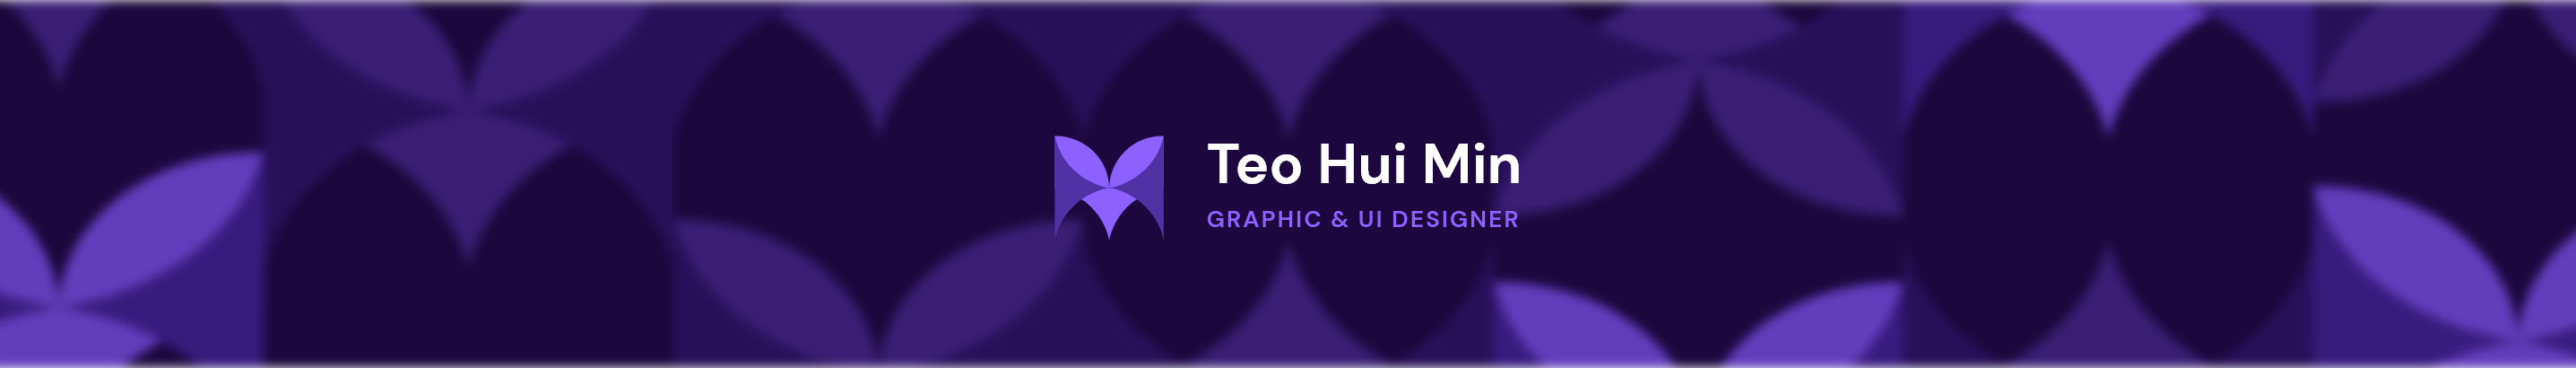 Bannière de profil de Teo Hui Min